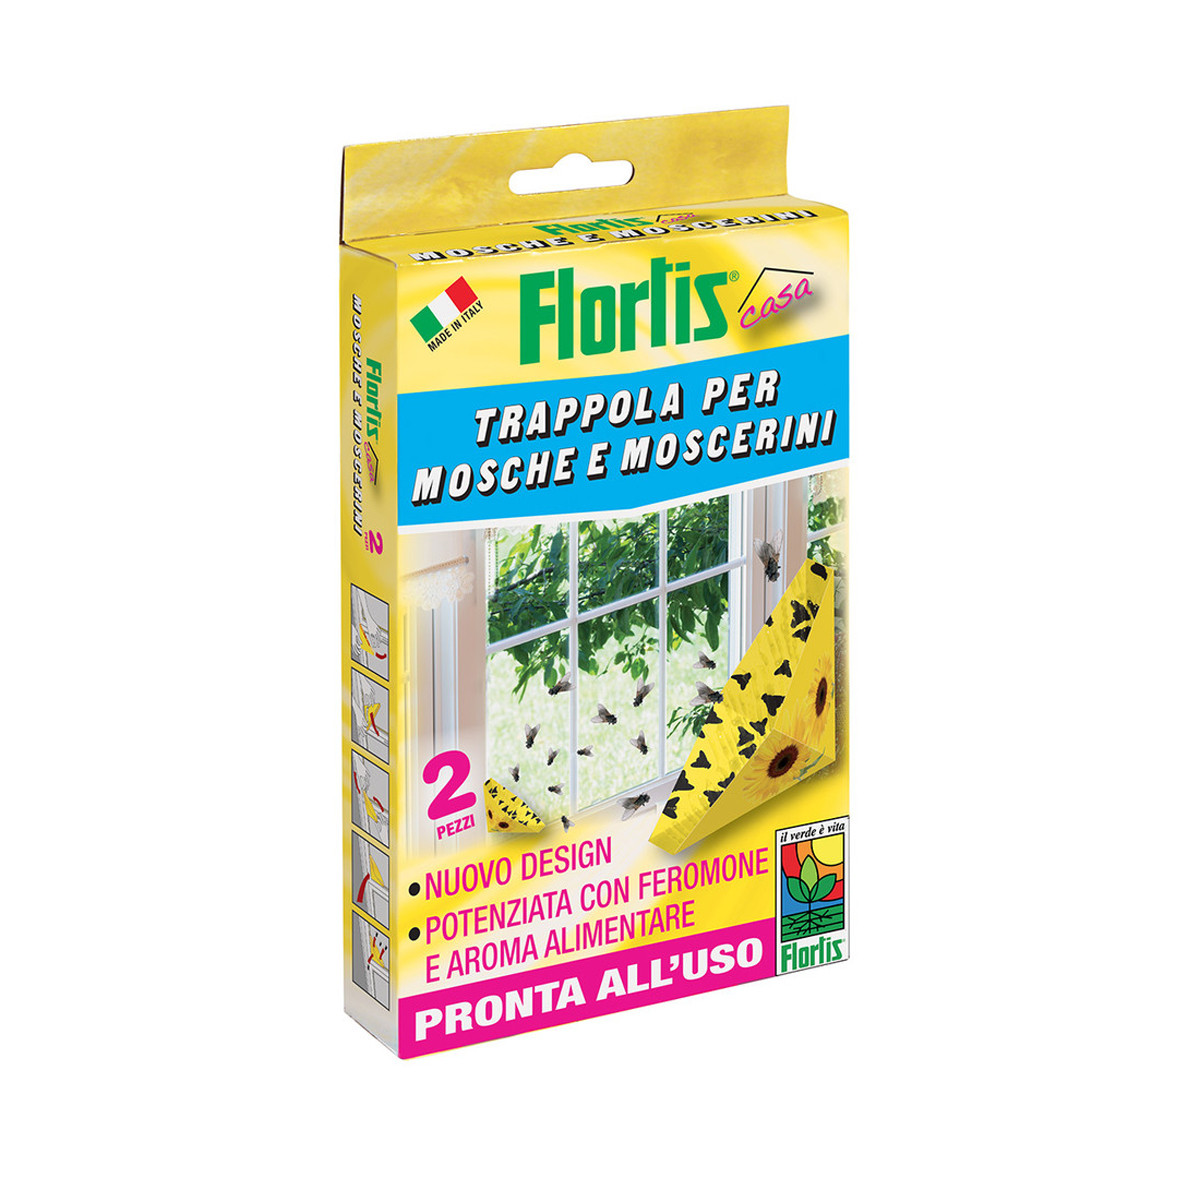 Trappola mosche e moscerini triangolare 2pz Flortis - in offerta online